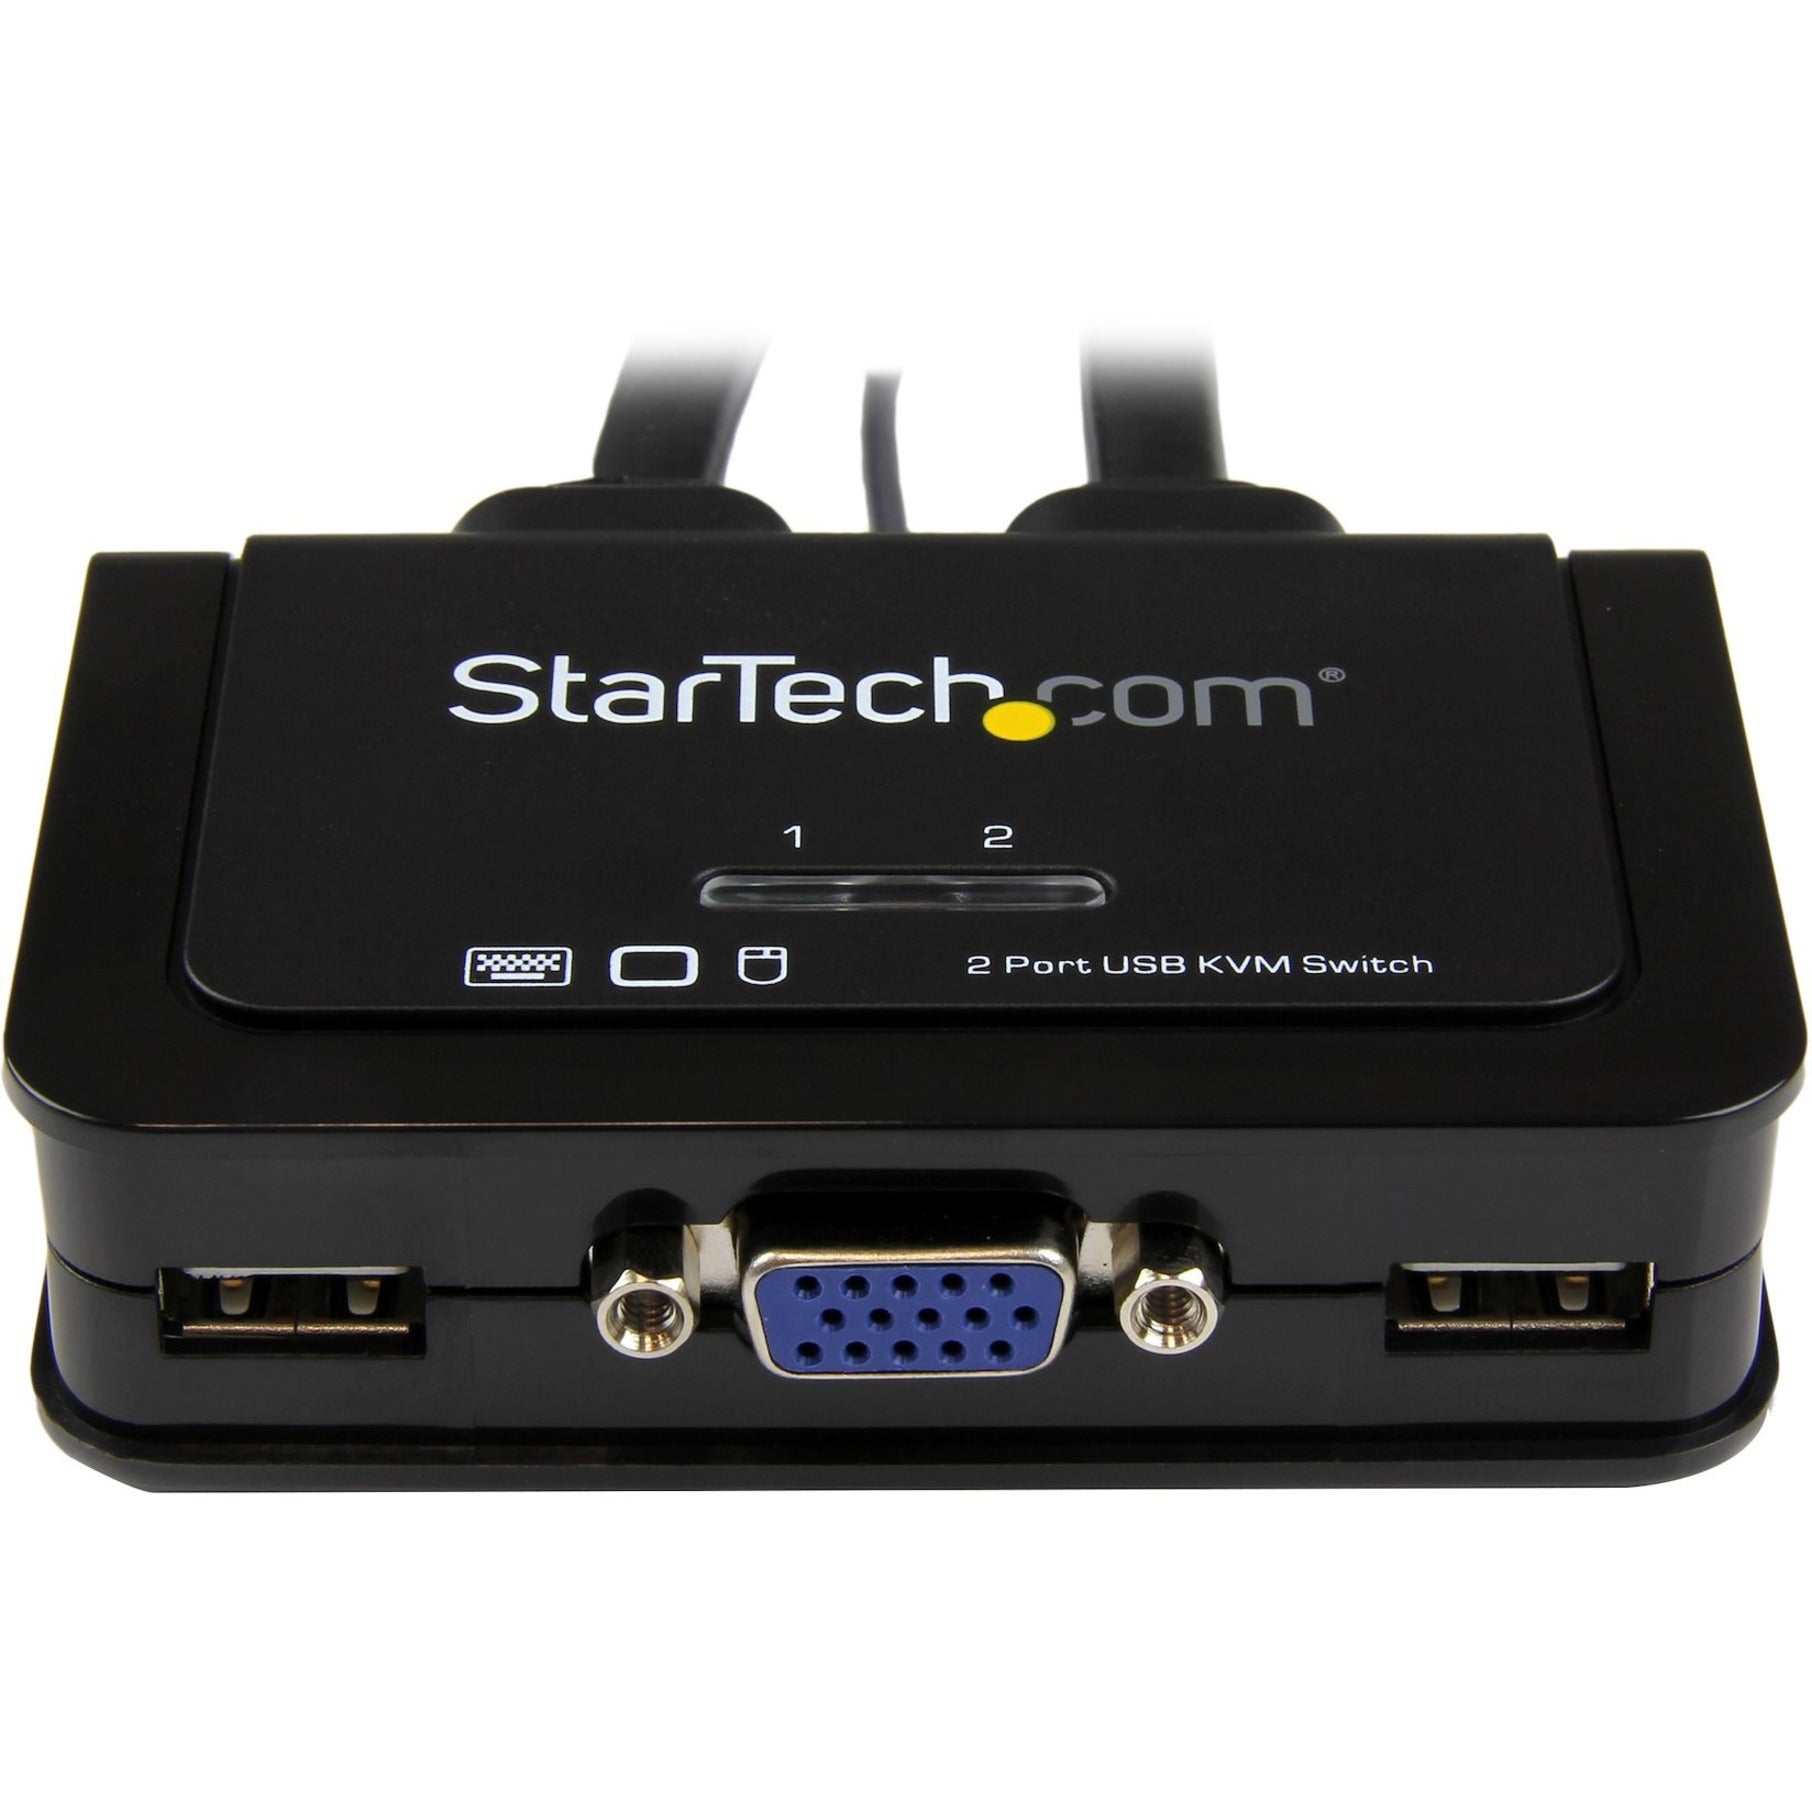 StarTech.com SV211USB 2 Port USB VGA Cable KVM Switch - USB Powered with Remote Switch, QXGA 2048 x 1536, 2 Year Warranty